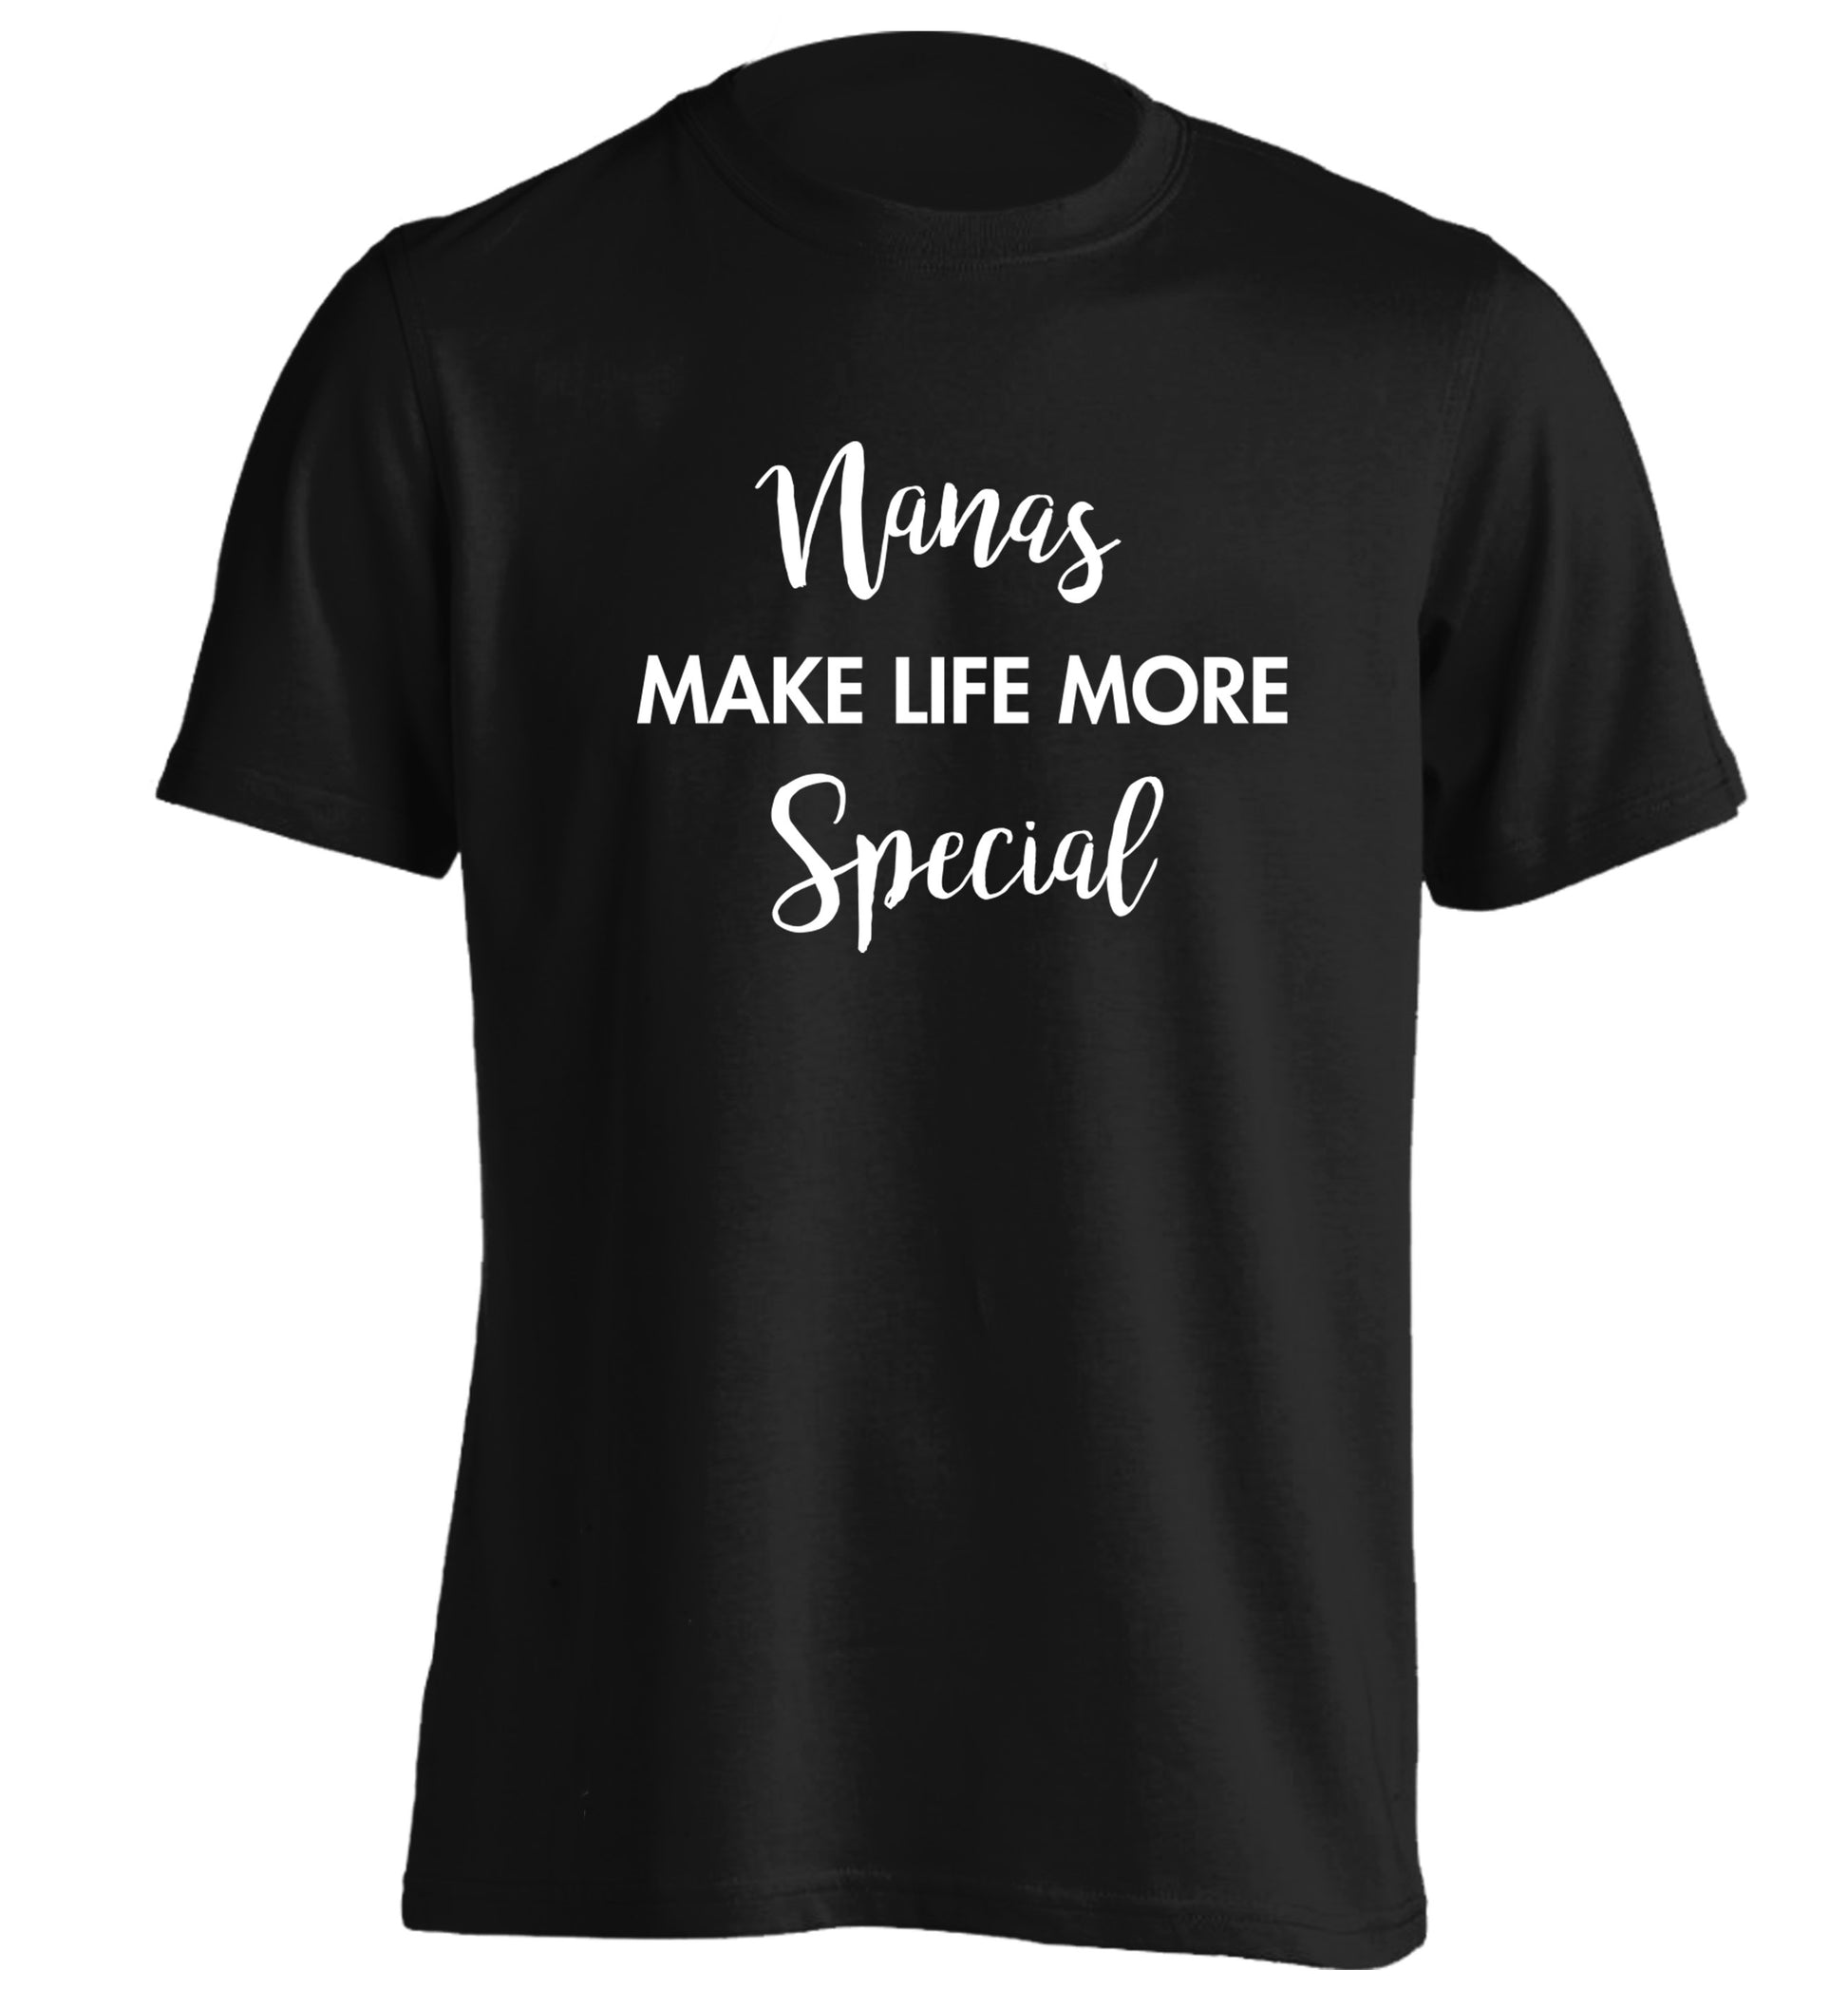 Nanas make life more special adults unisex black Tshirt 2XL